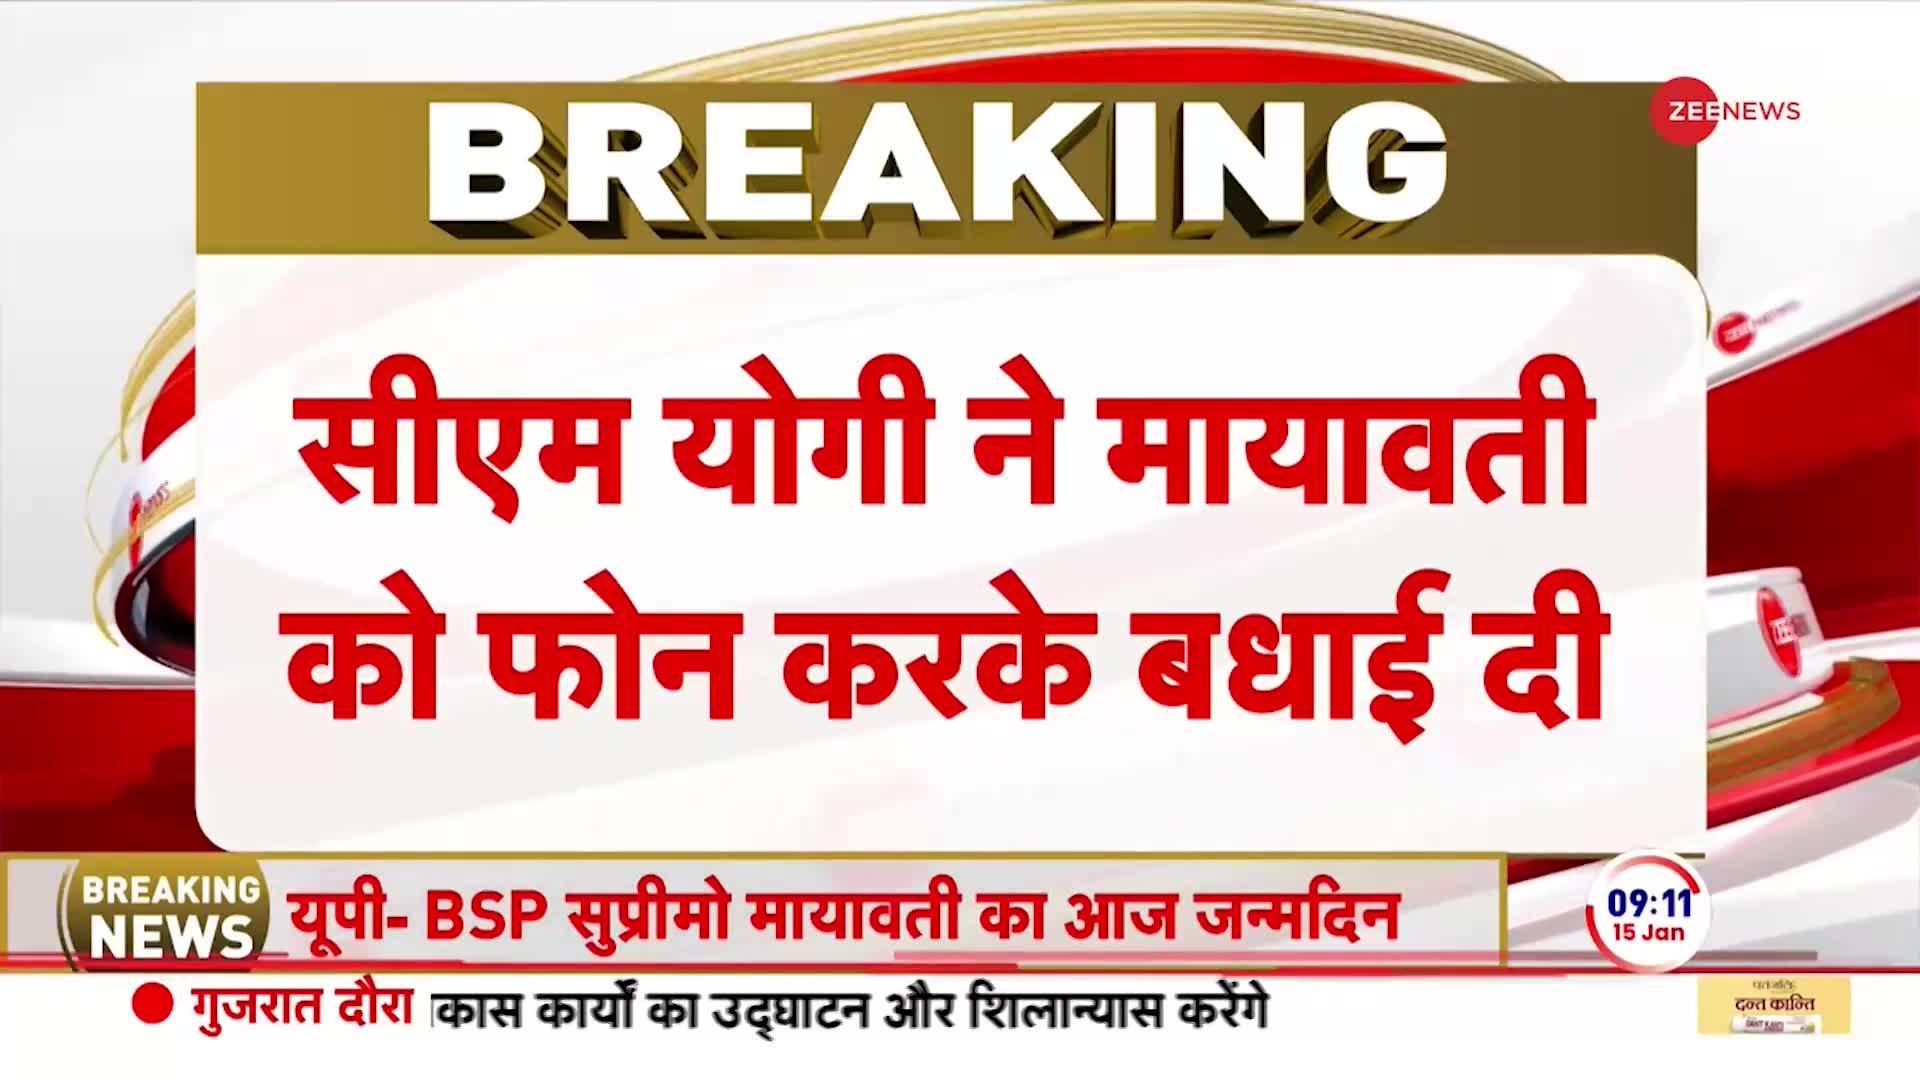 Breaking News: आज BSP अध्यक्ष मायावती का जन्मदिन, CM योगी ने दी बधाई